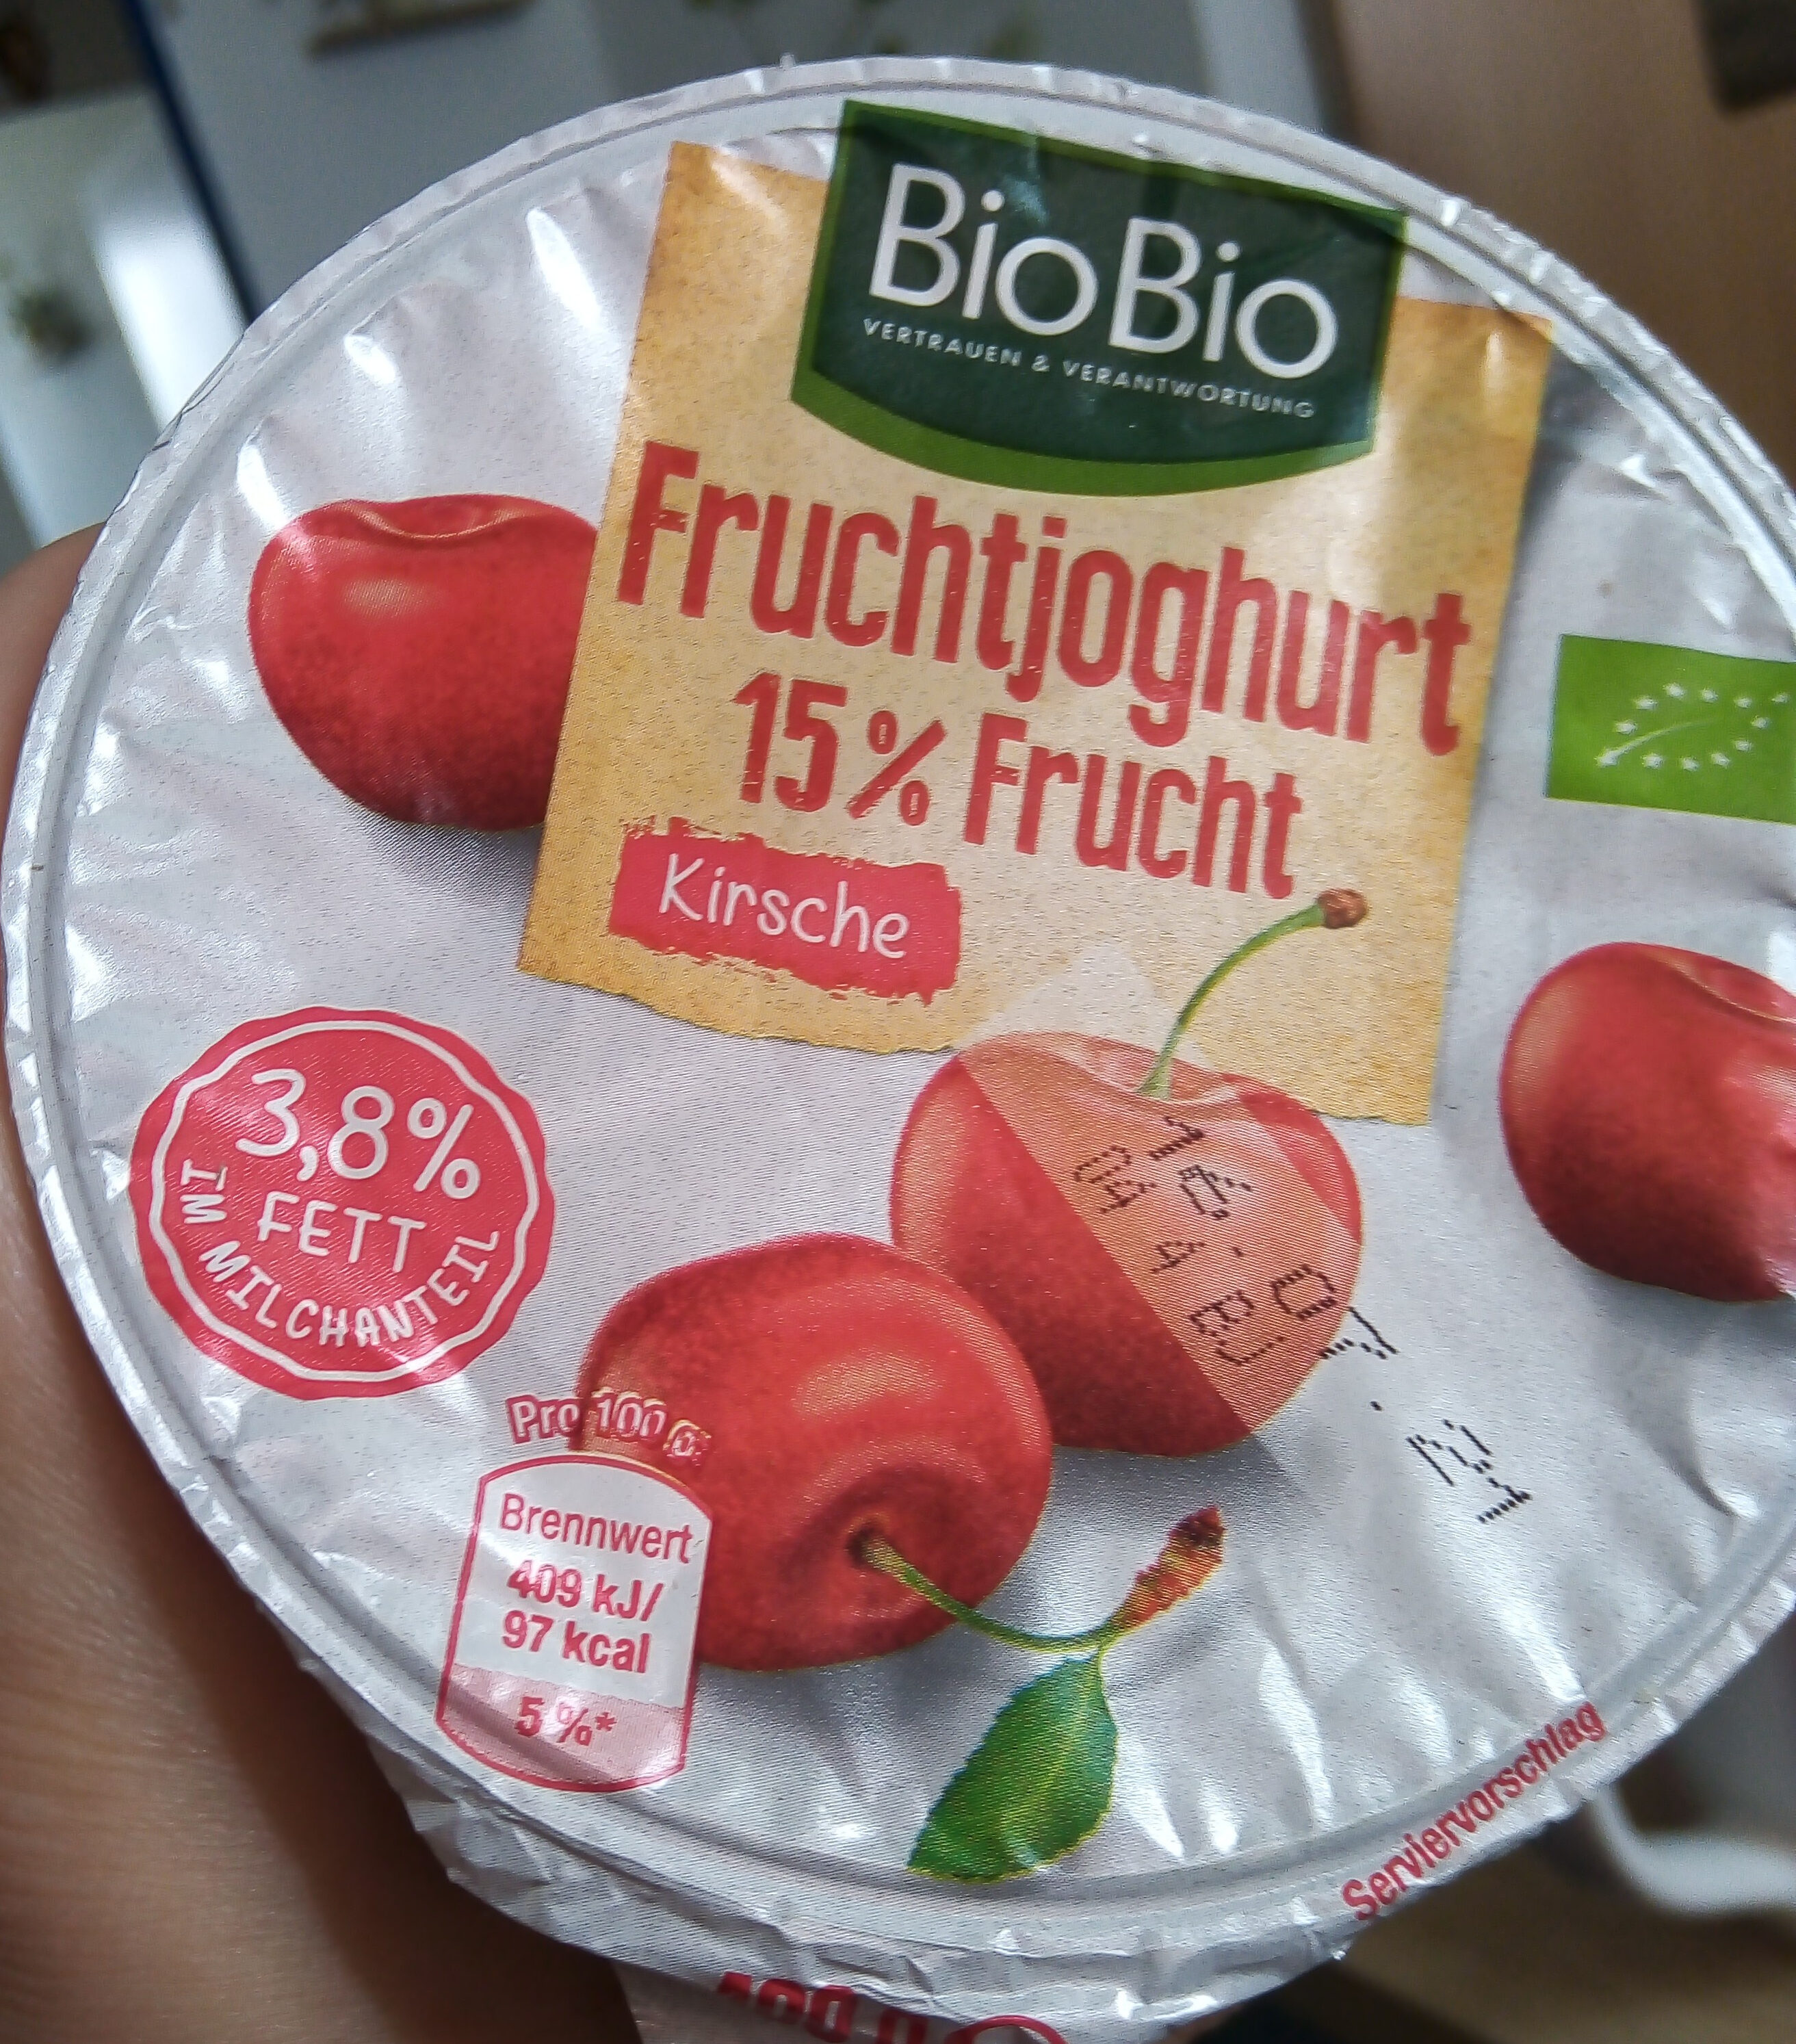 Fruchtjoghurt 15% Frucht Kirsche - Produit - de